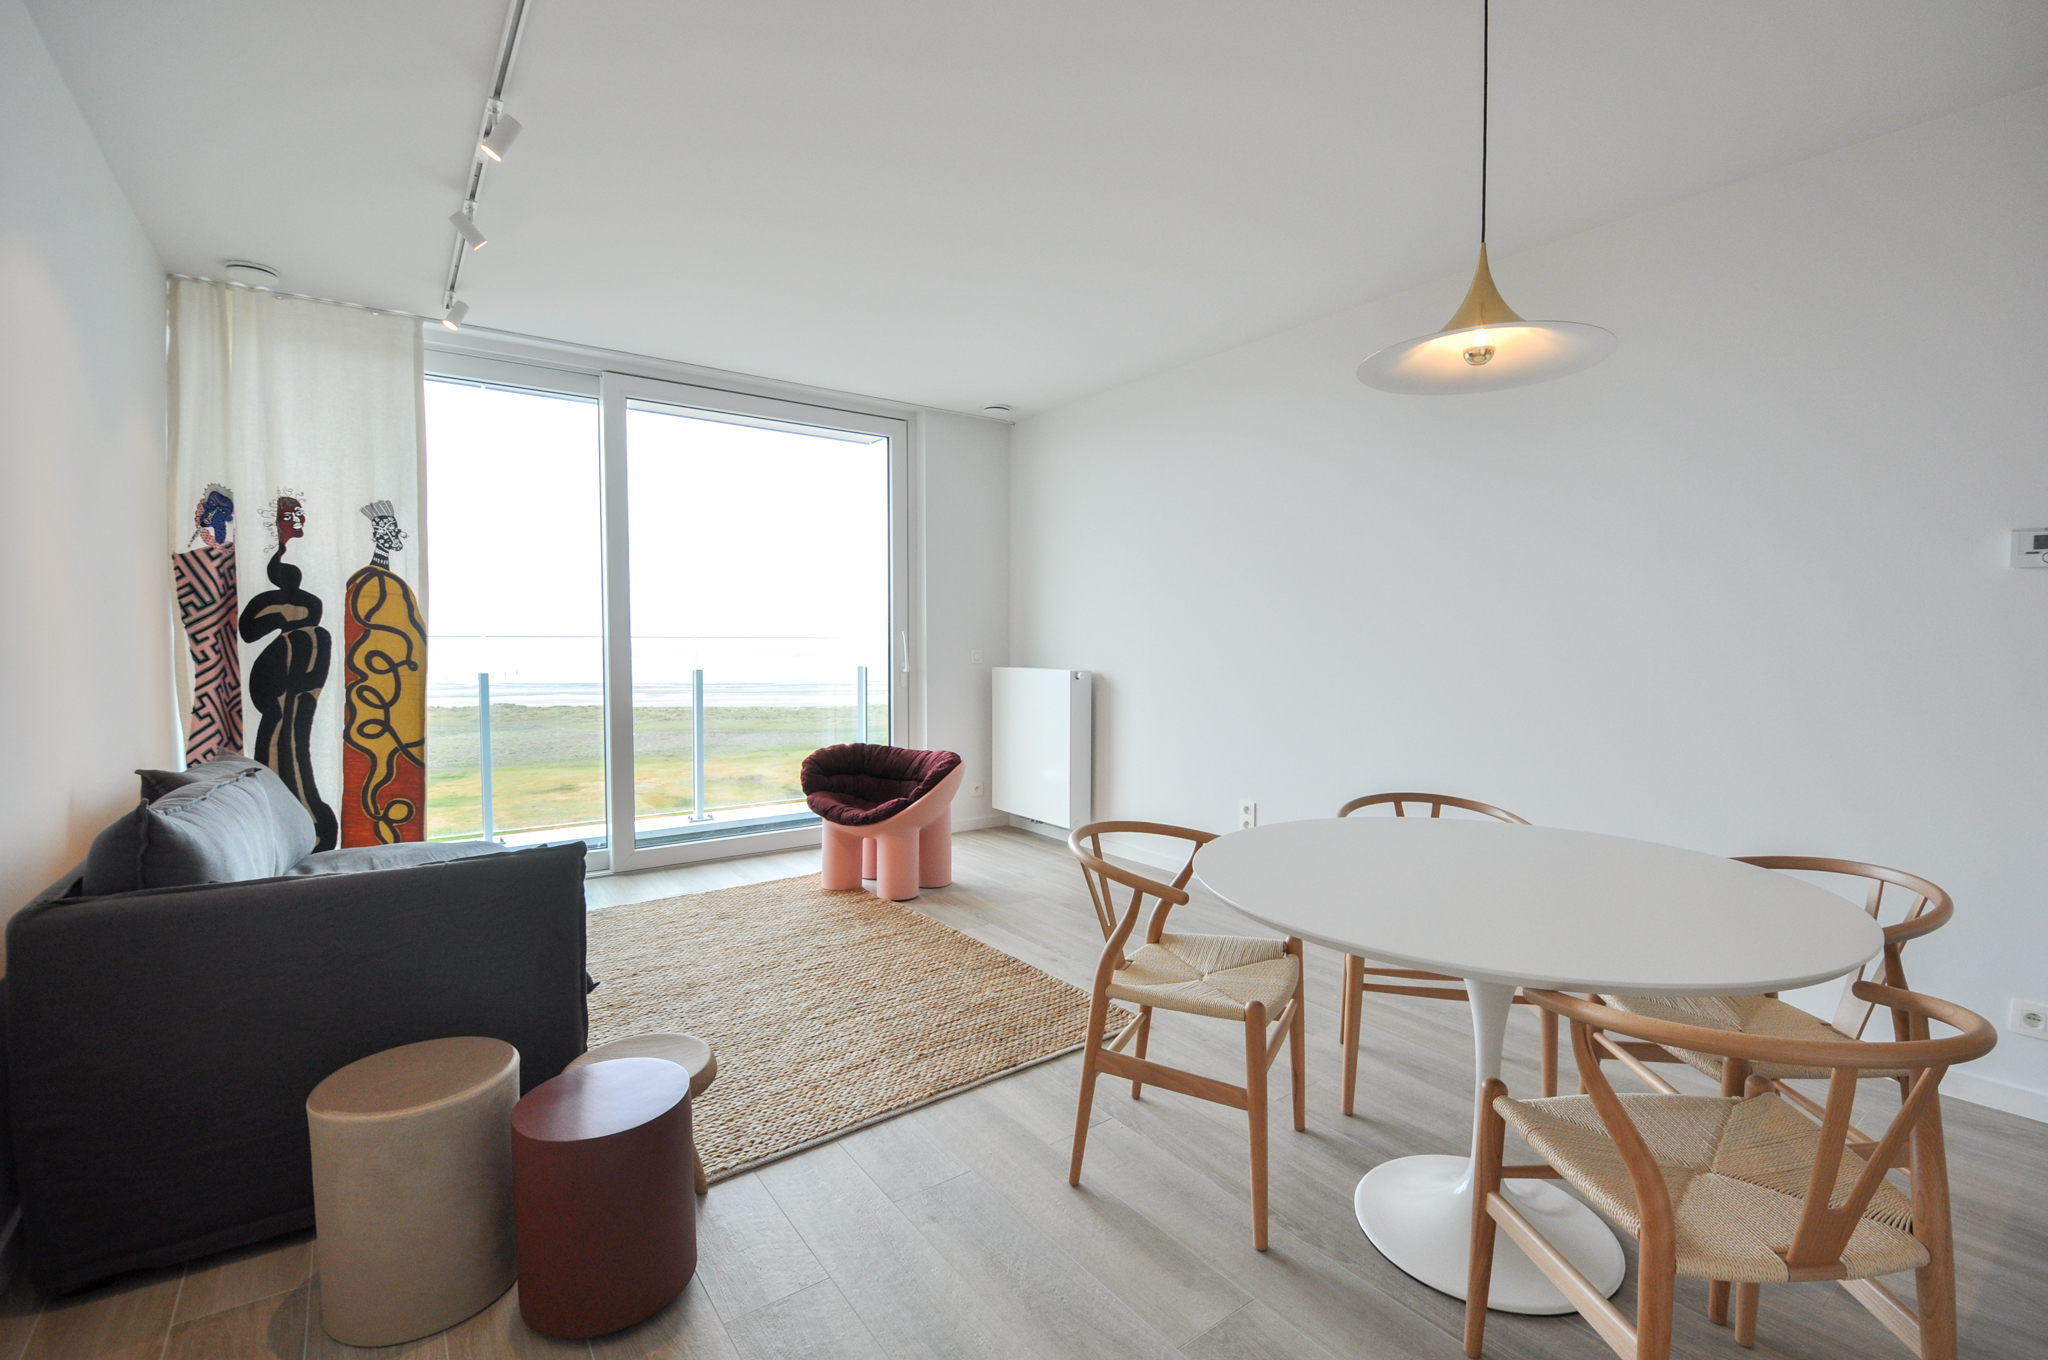 Nieuw, modern ingericht appartement op de Zeedijk van Heist!